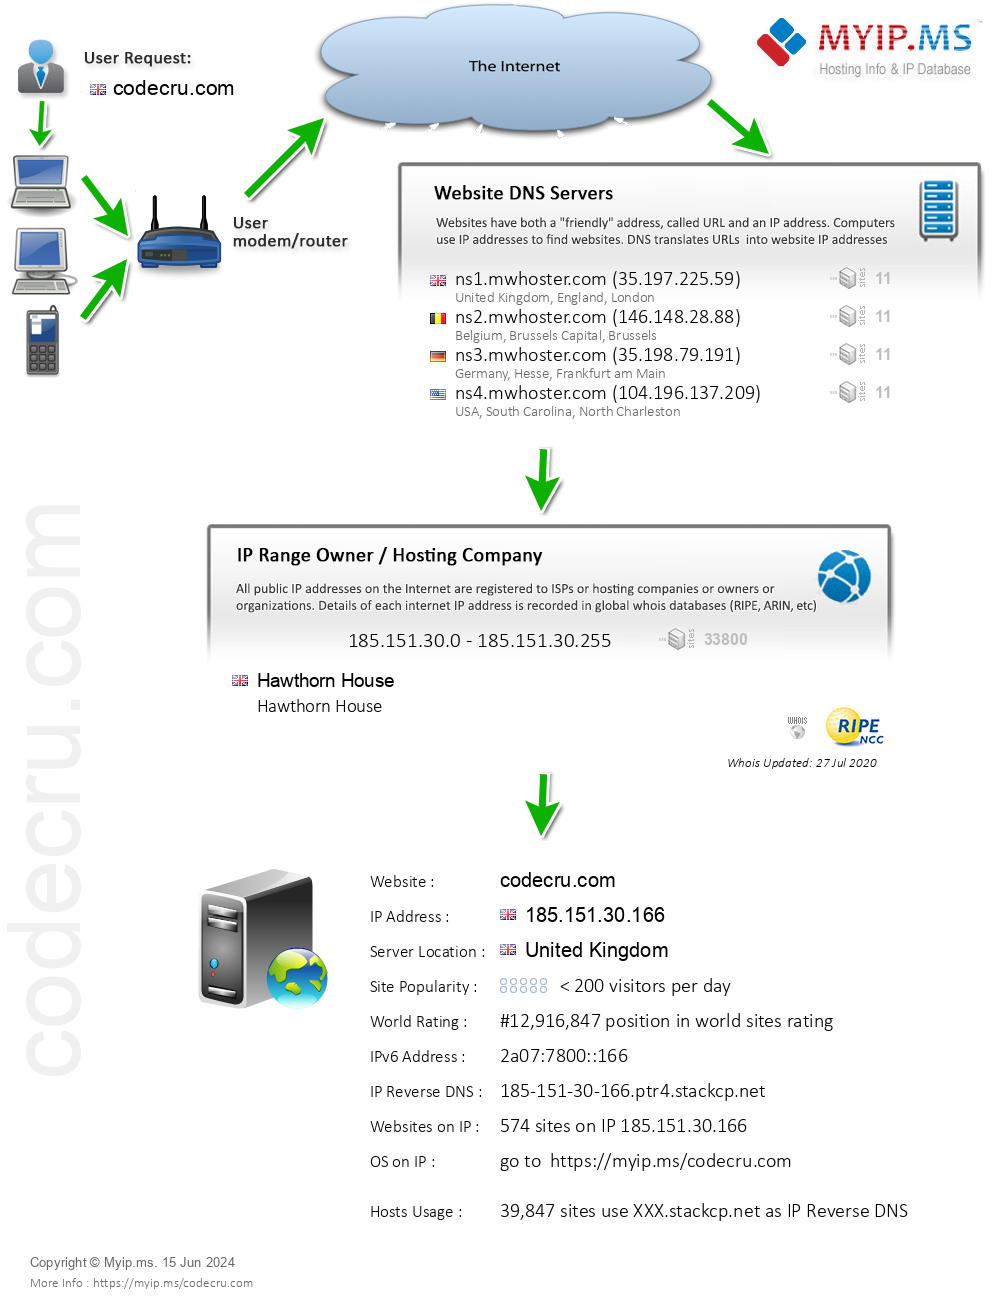 Codecru.com - Website Hosting Visual IP Diagram